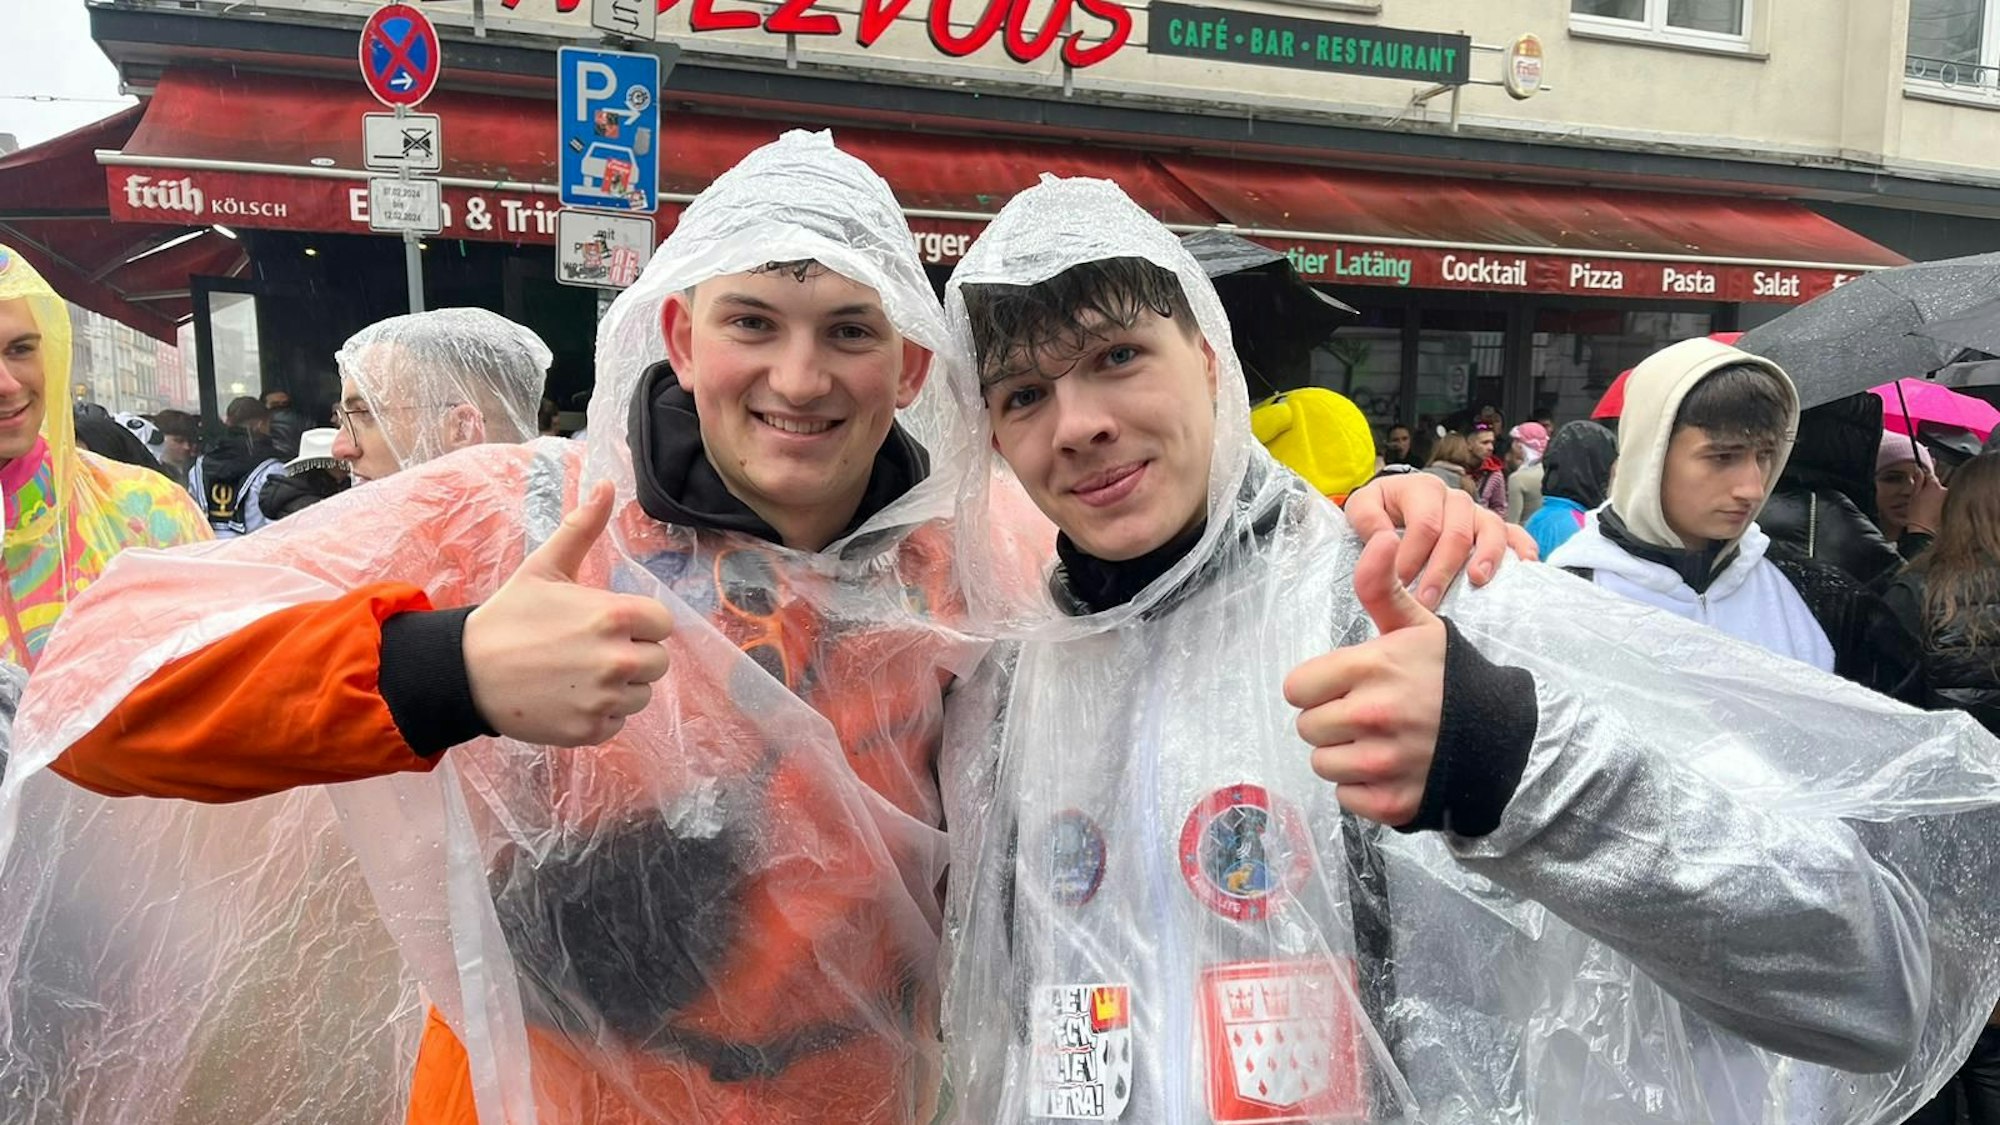 Zwei junge Männer in Regenanzügen im Karneval.